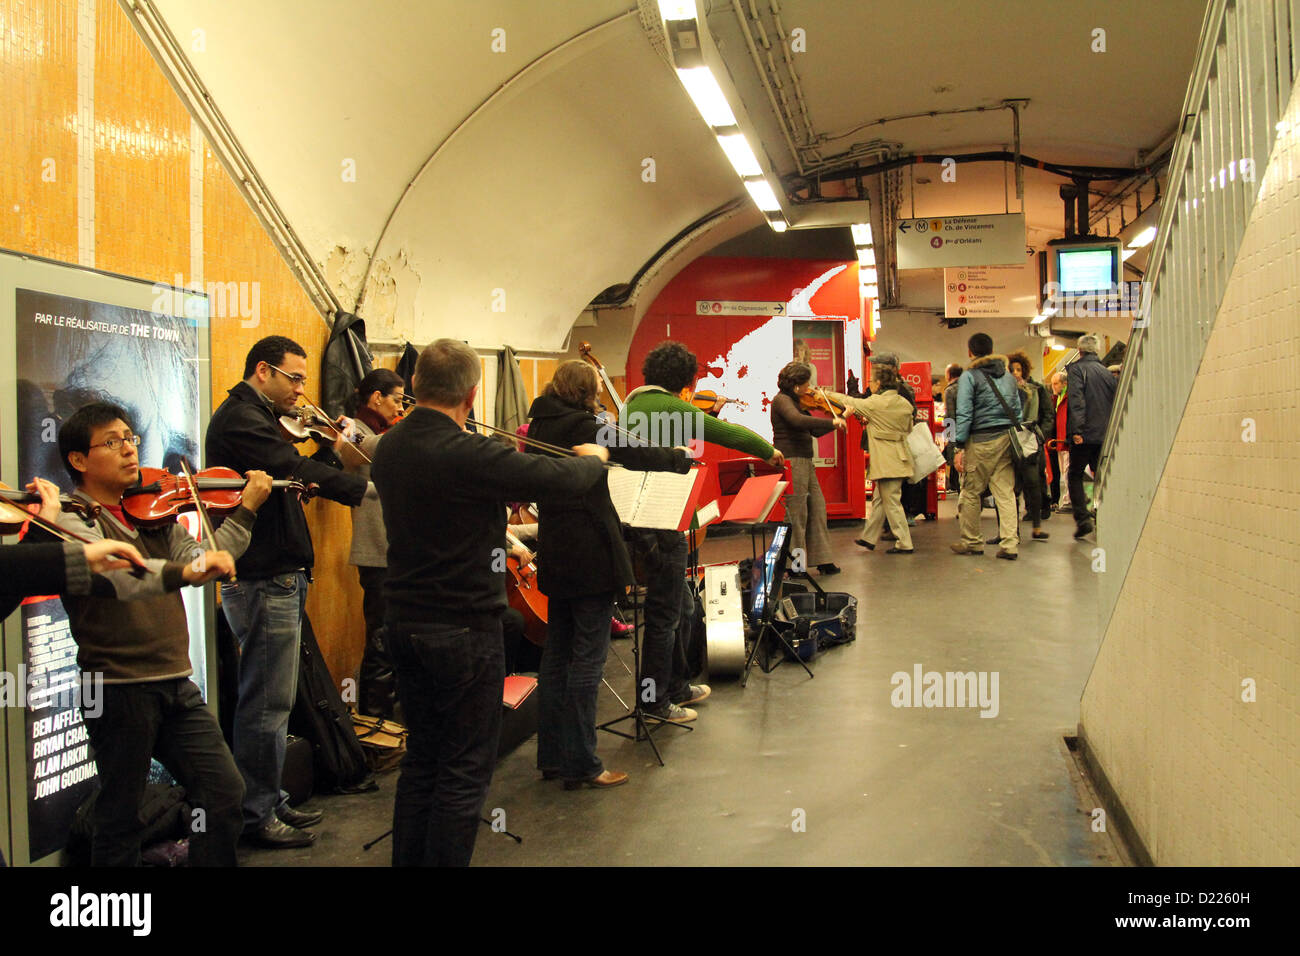 L'orchestre joue sur la station de métro à Paris le 06 novembre 2012 à Paris, France Banque D'Images